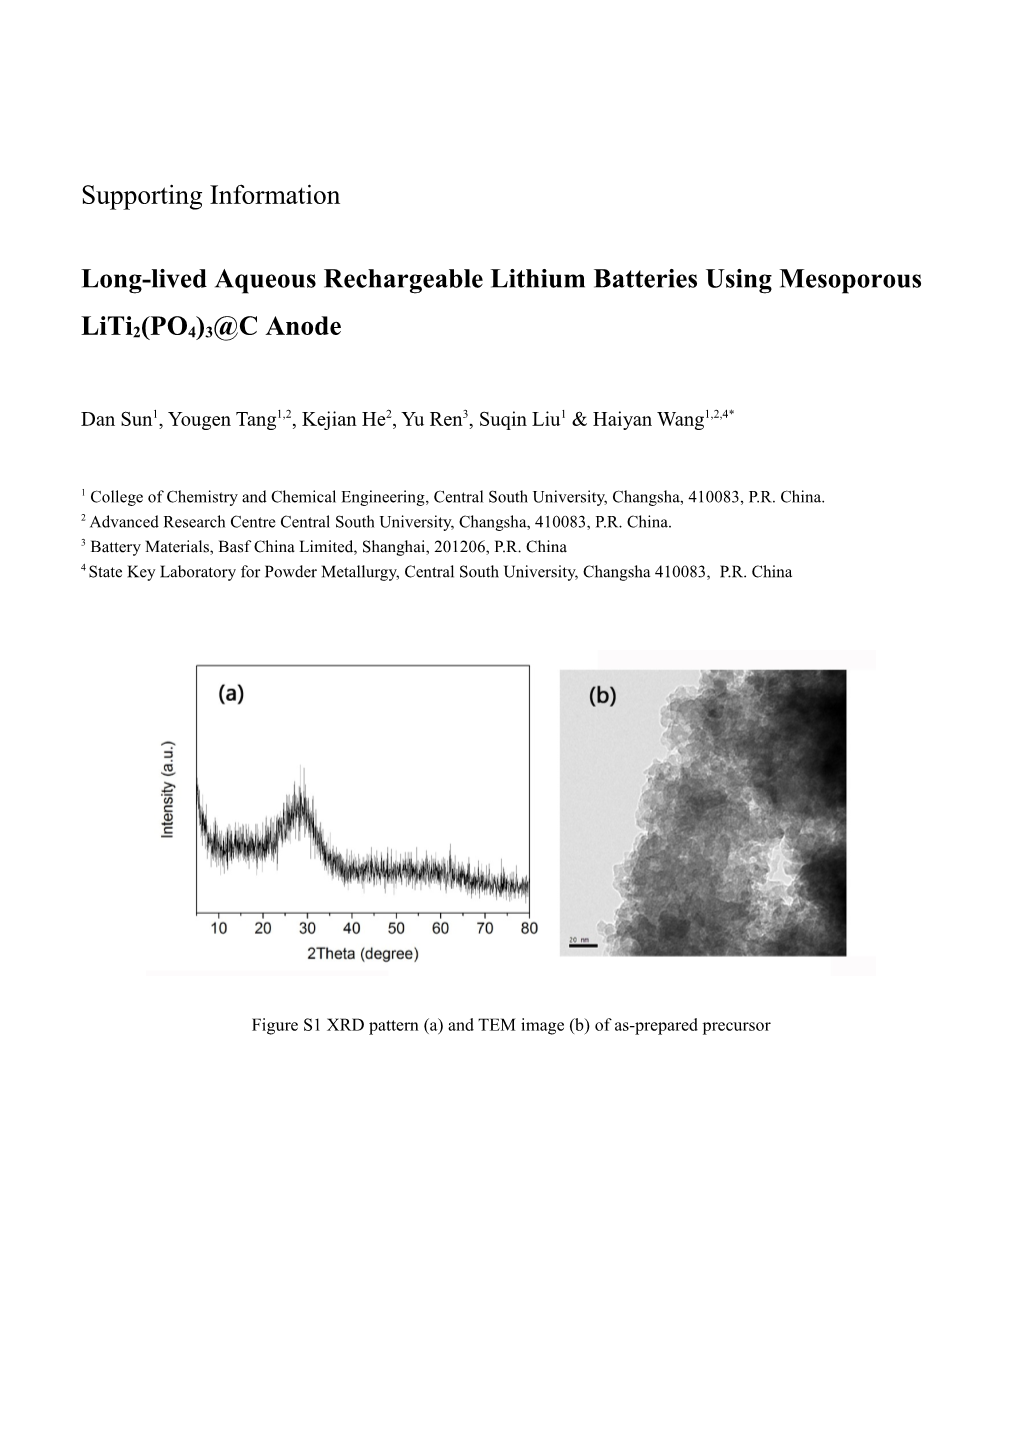 Long-Lived Aqueous Rechargeable Lithium Batteries Using Mesoporous Liti2(PO4)3 C Anode